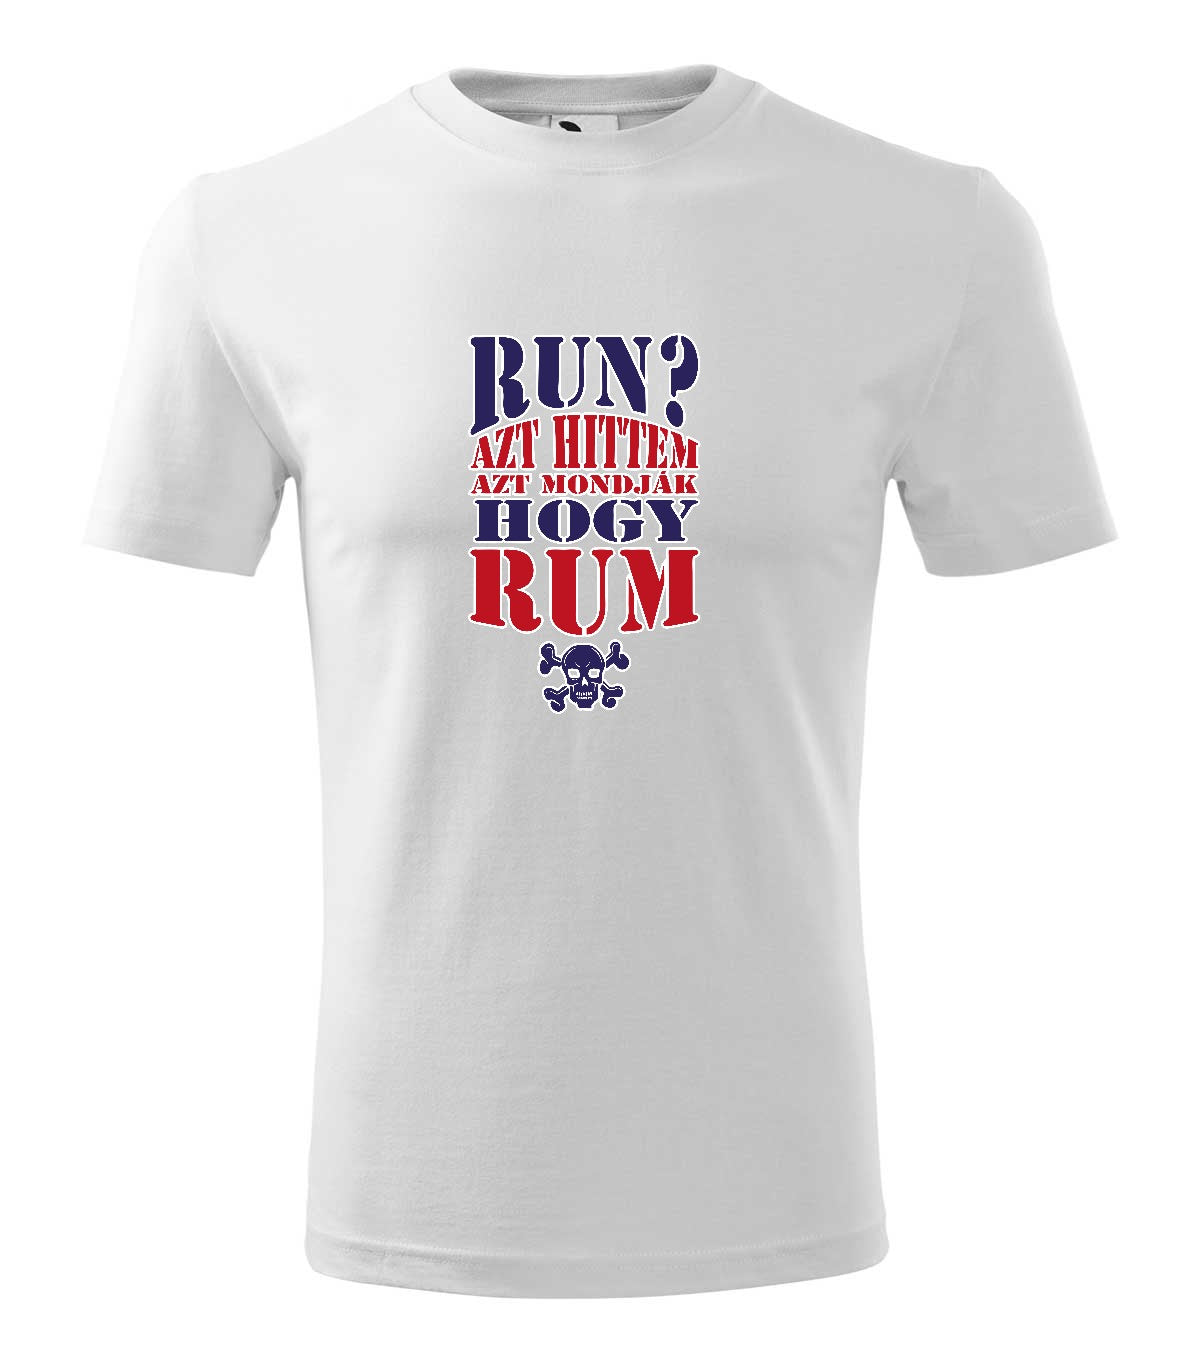 Run Rum férfi póló